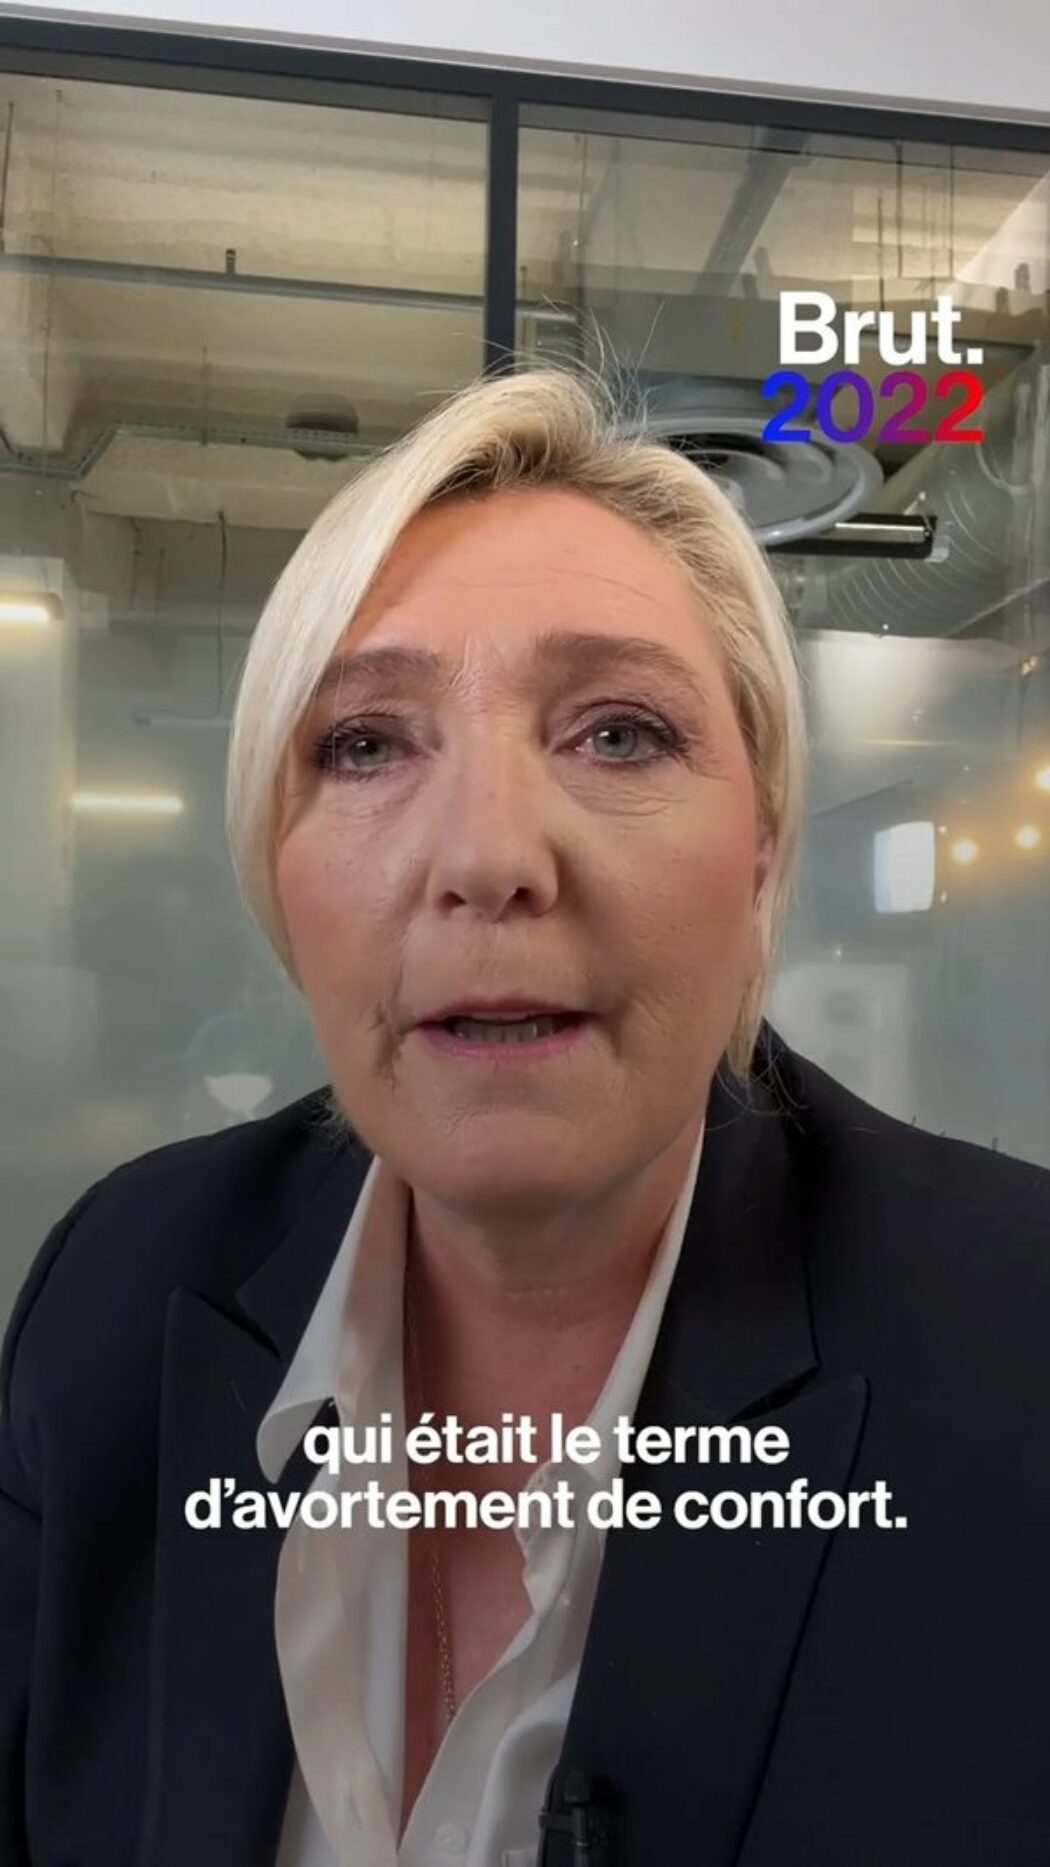 La nouvelle position de Marine Le Pen sur l’avortement